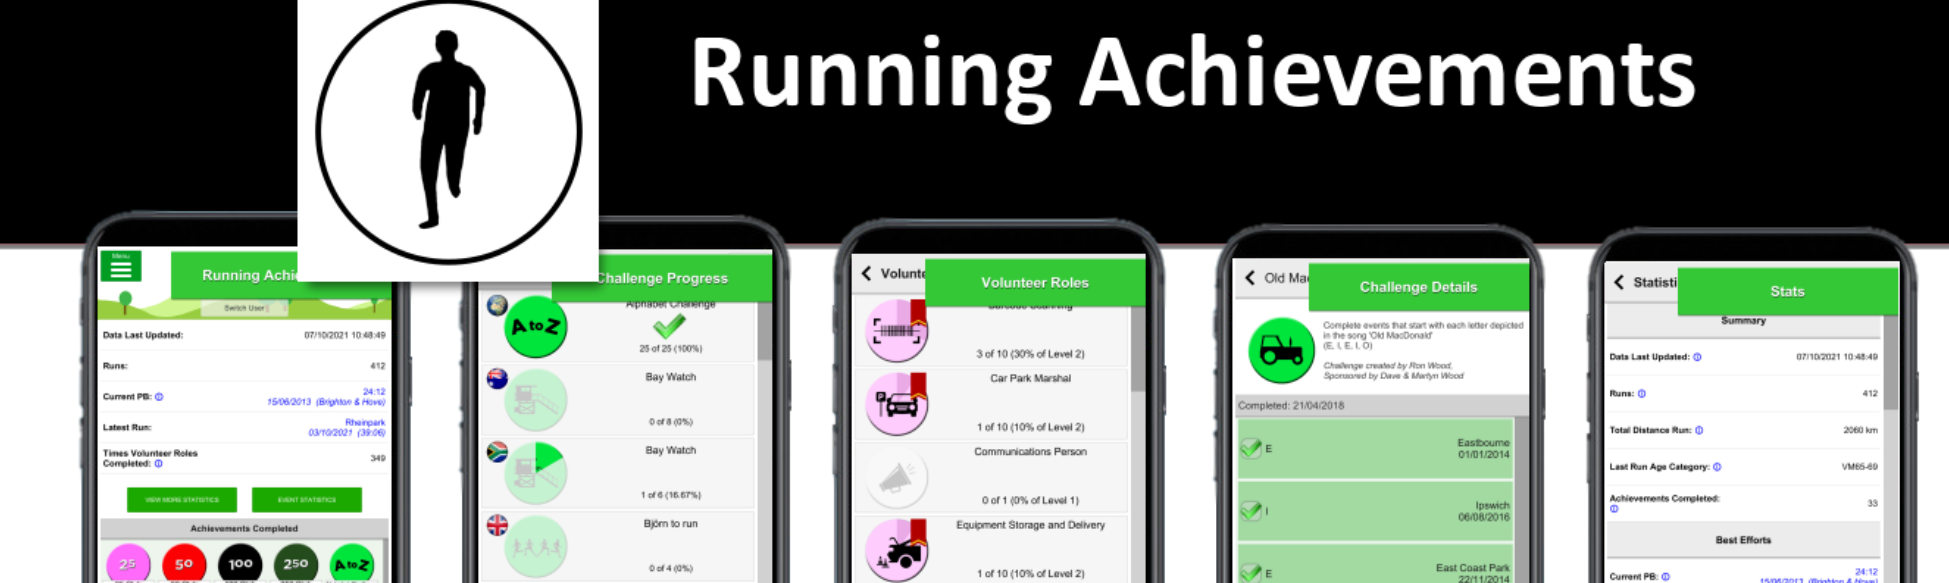 Running Achievements Version 1.7.4 Released